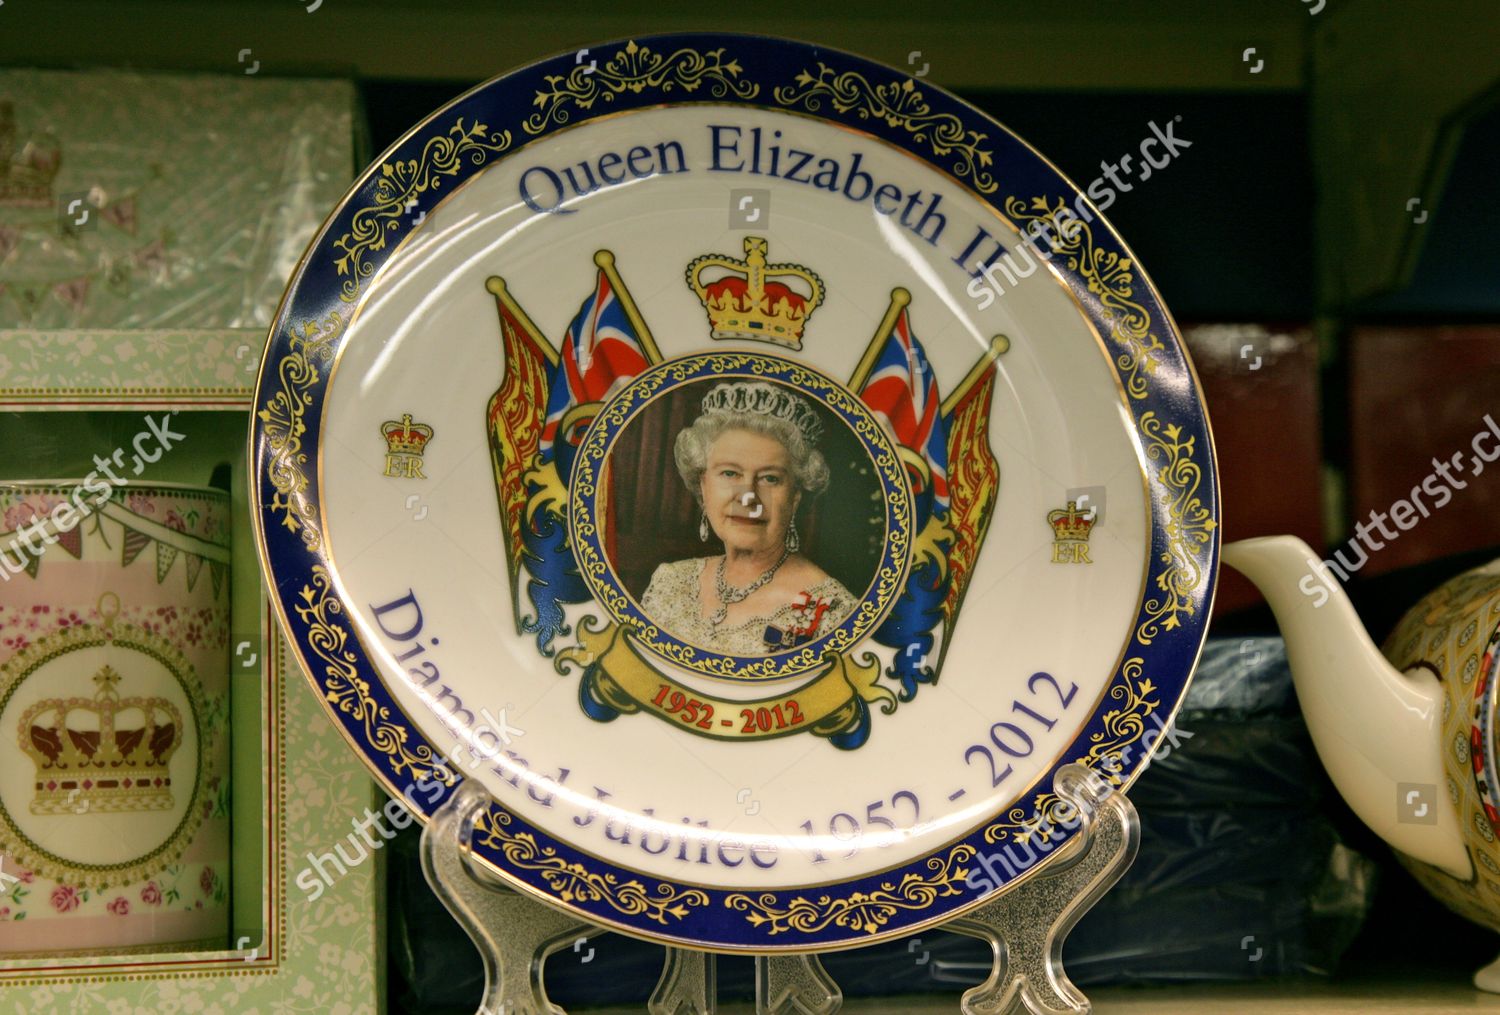 Souvenir SHOT GLASS Queen Elizabeth II Diamond Jubilee 2012 